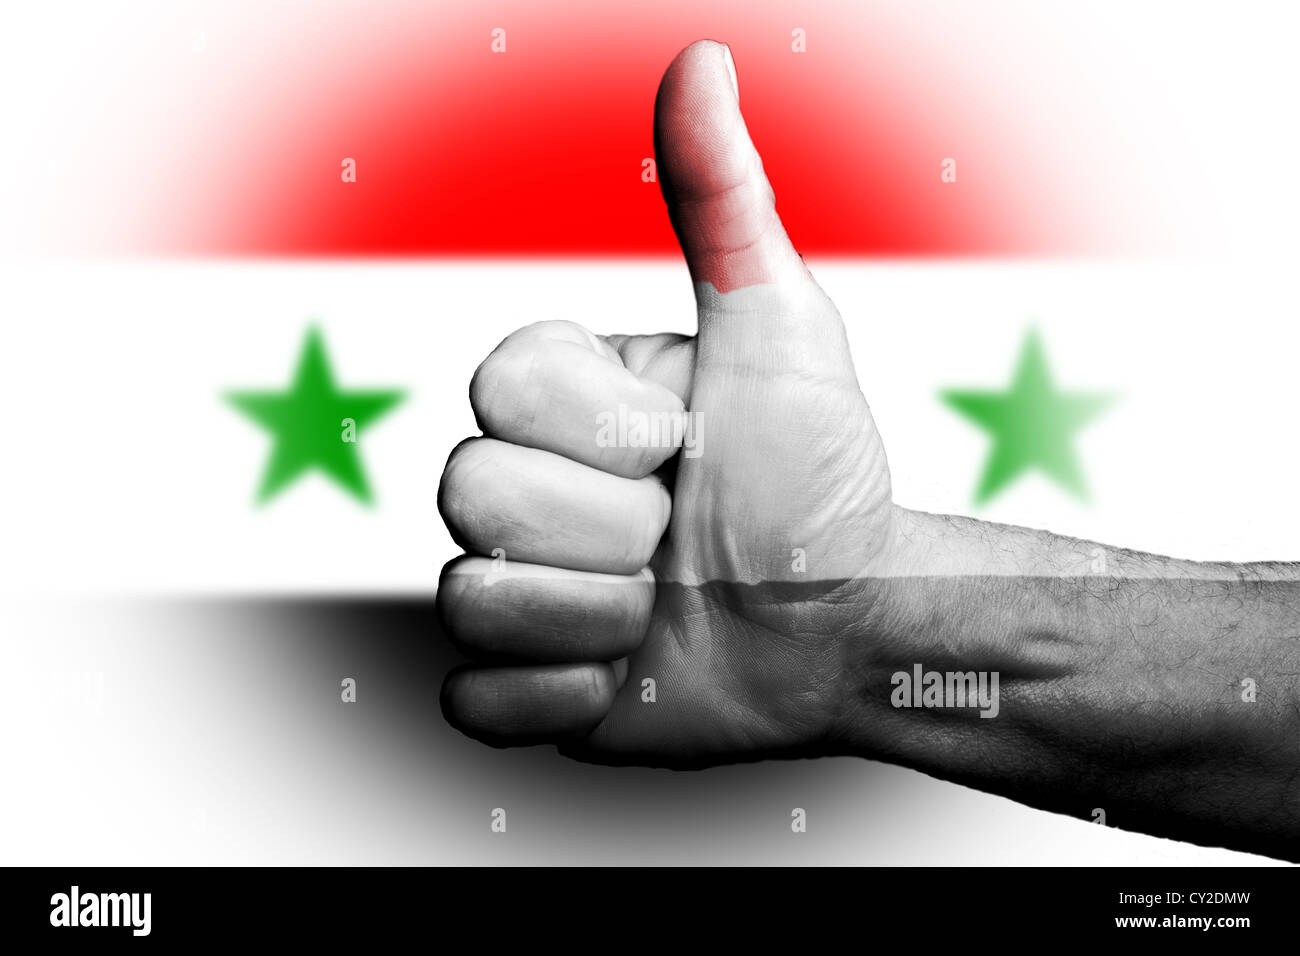 Thumbs up para Siria Sirios, metáfora deportiva vamos a ganar prevalecer,voto de confianza para el país y el pueblo. Foto de stock